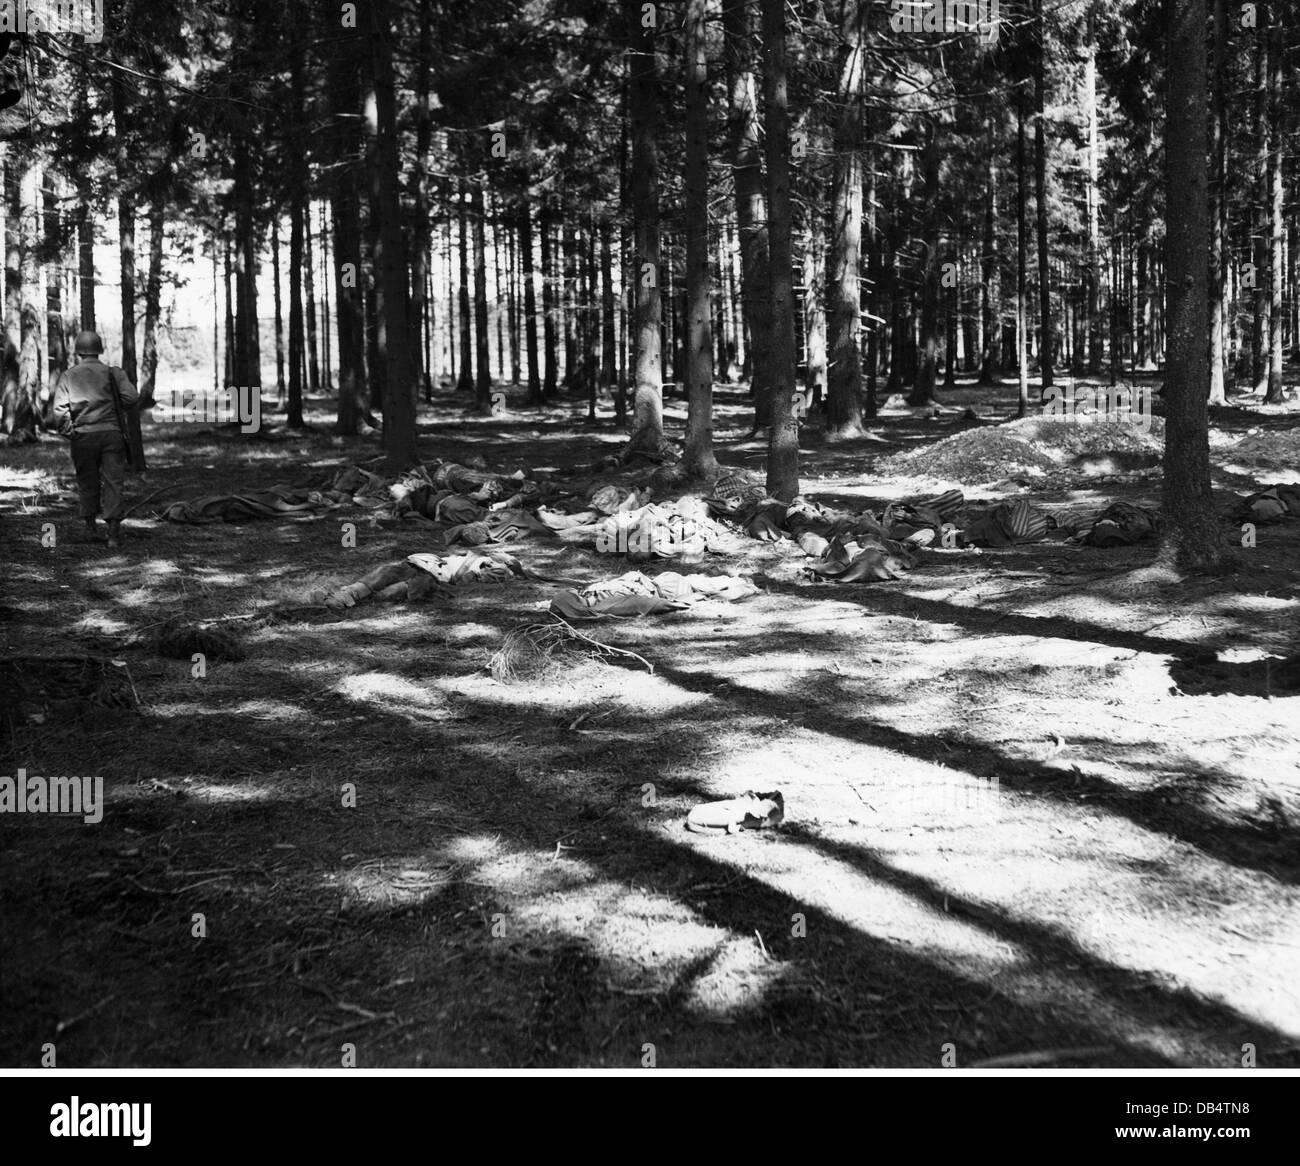 Nazisme / National socialisme, crimes, meurtre de prisonniers du camp de concentration Landsberg am Lech par les SS, cadavres dans la forêt, 30.4.1945, droits additionnels-Clearences-non disponible Banque D'Images